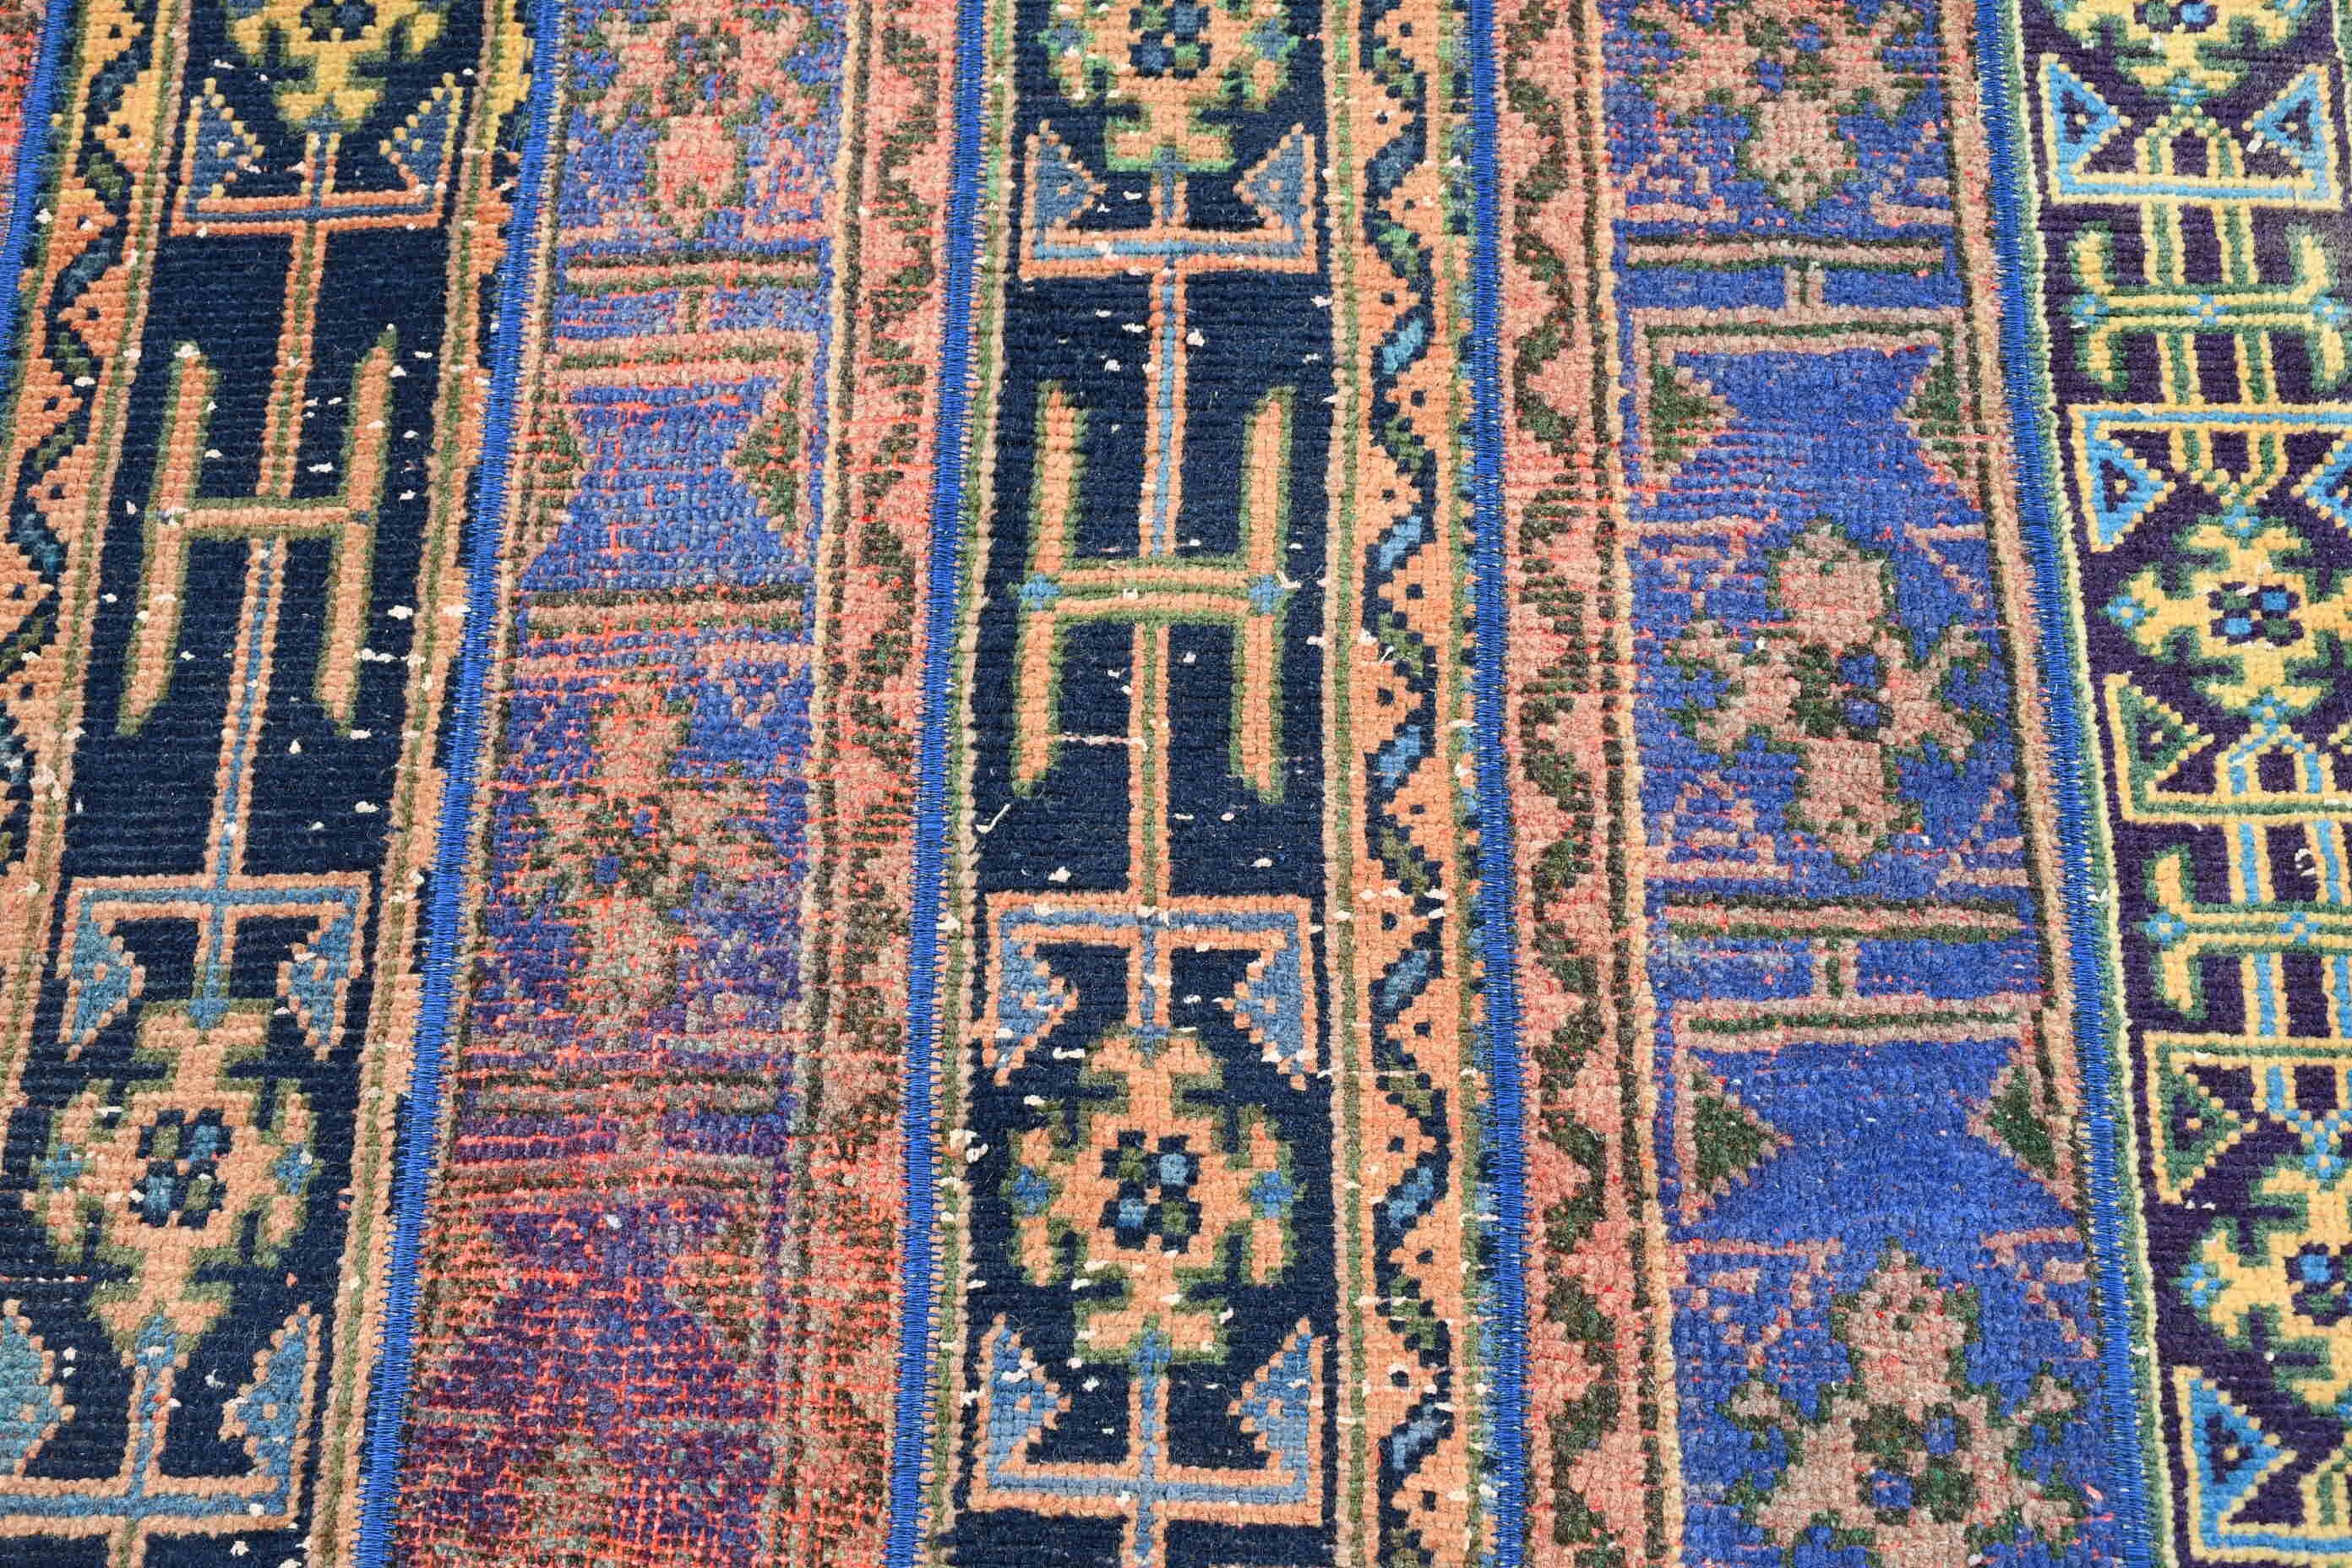 Corridor Rugs, Vintage Rugs, Stair Rug, Oriental Rug, Blue Oushak Rug, Turkish Rug, Home Decor Rugs, Turkey Rug, 2.8x7.3 ft Runner Rug